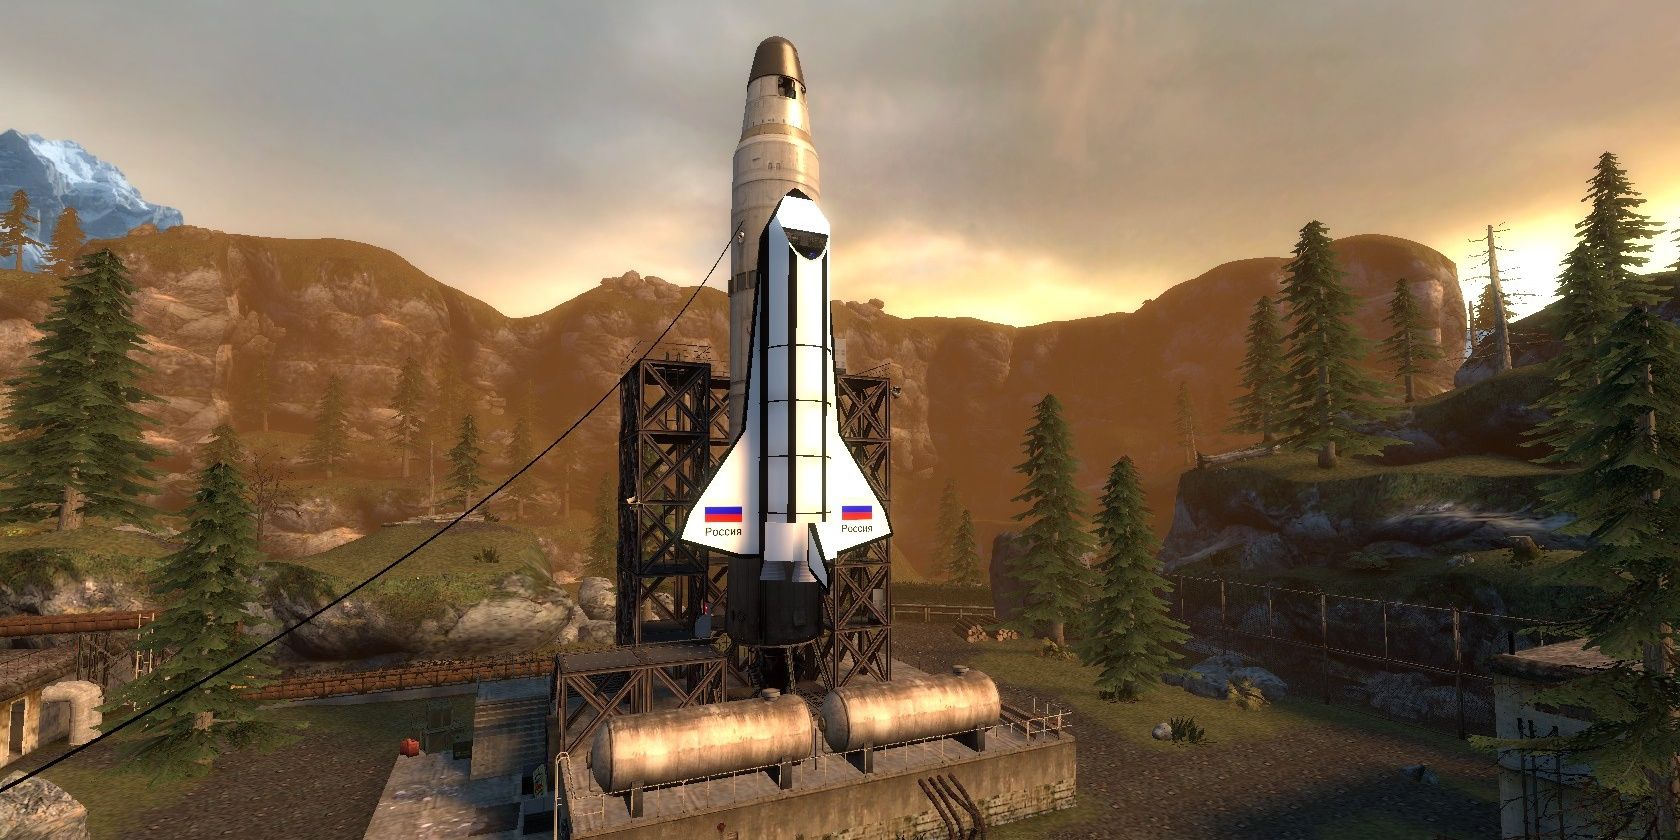 The rocket in Cosmonaut Half Life 2 Mod